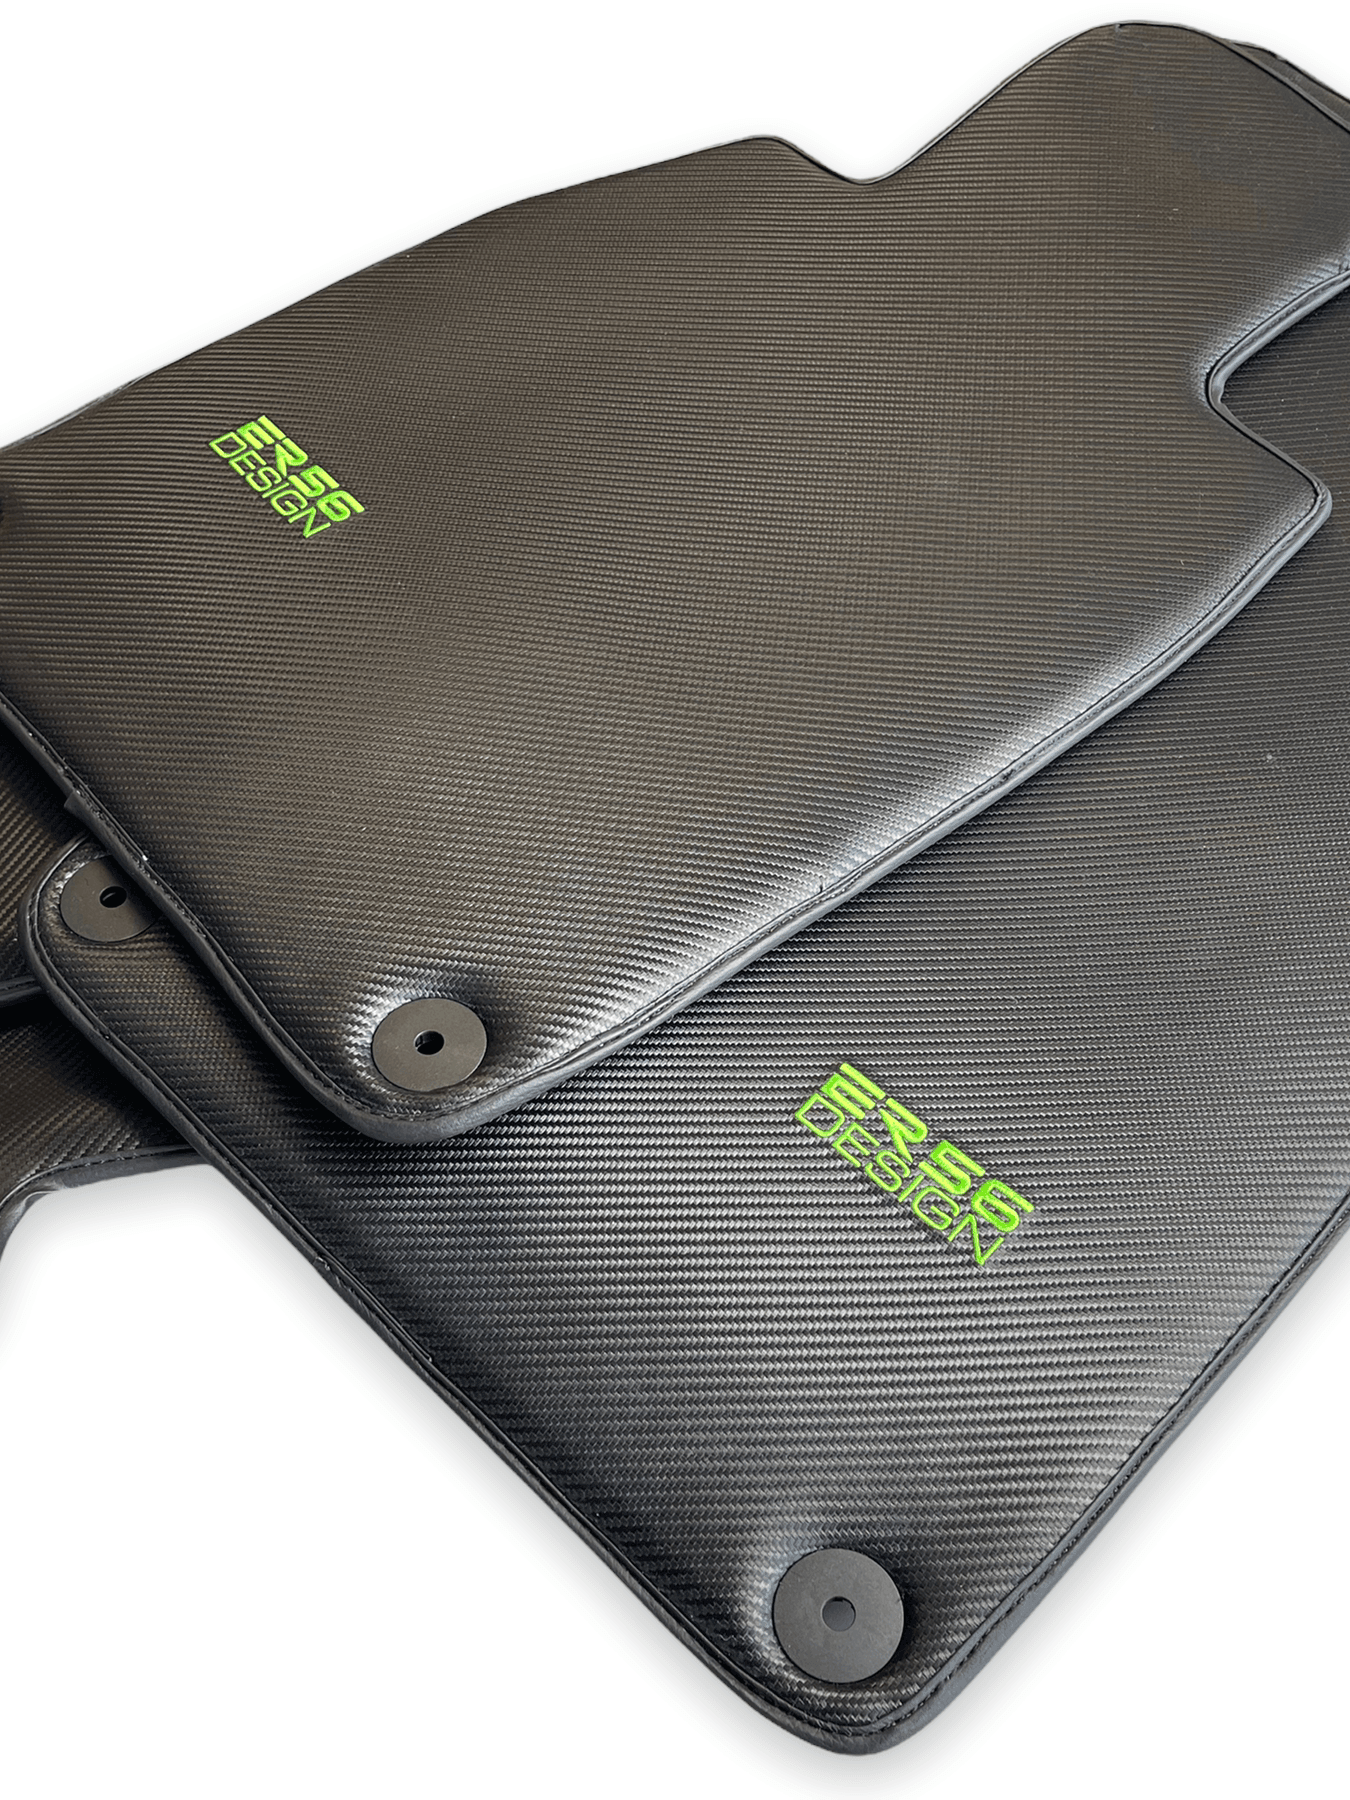 Carbon Fiber Floor Mats for Porsche Taycan (2019-2023) Green Sewing - AutoWin